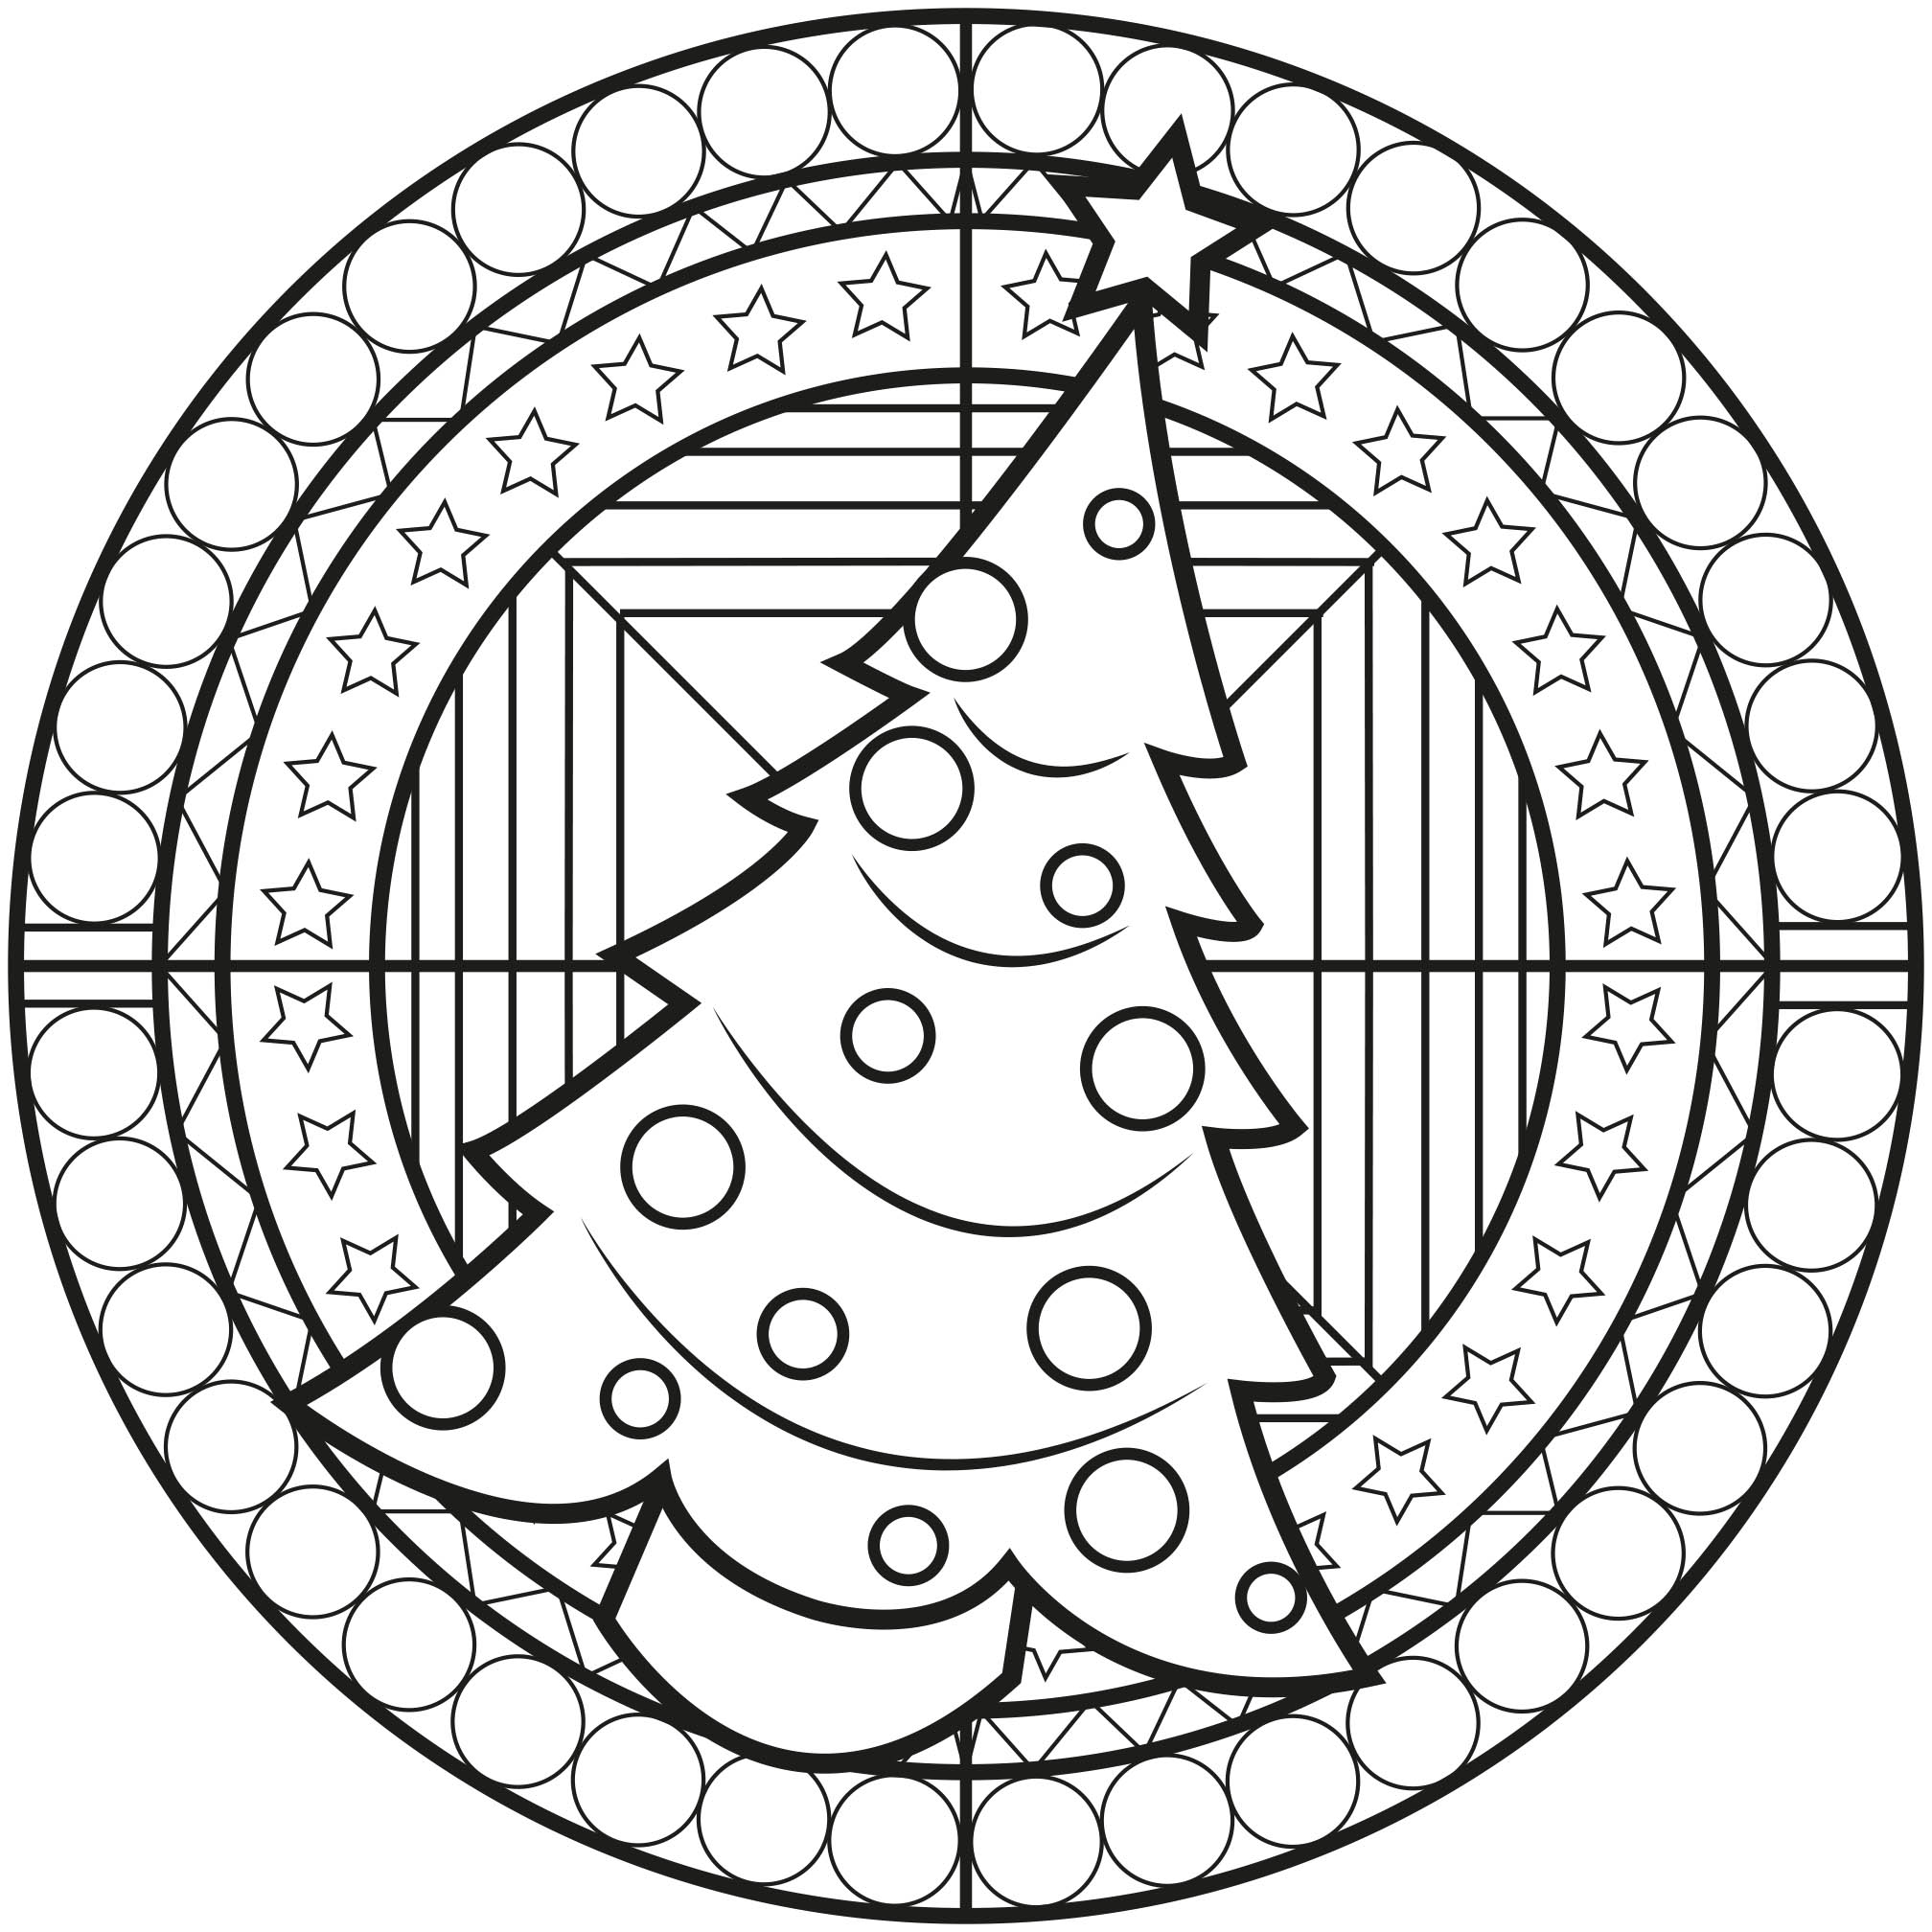 Ein Mandala mit 'normalem' Schwierigkeitsgrad zum Thema Weihnachten, das für Kinder und Erwachsene geeignet ist, die sich Ausmalbilder wünschen, die weder zu einfach noch zu schwierig sind.